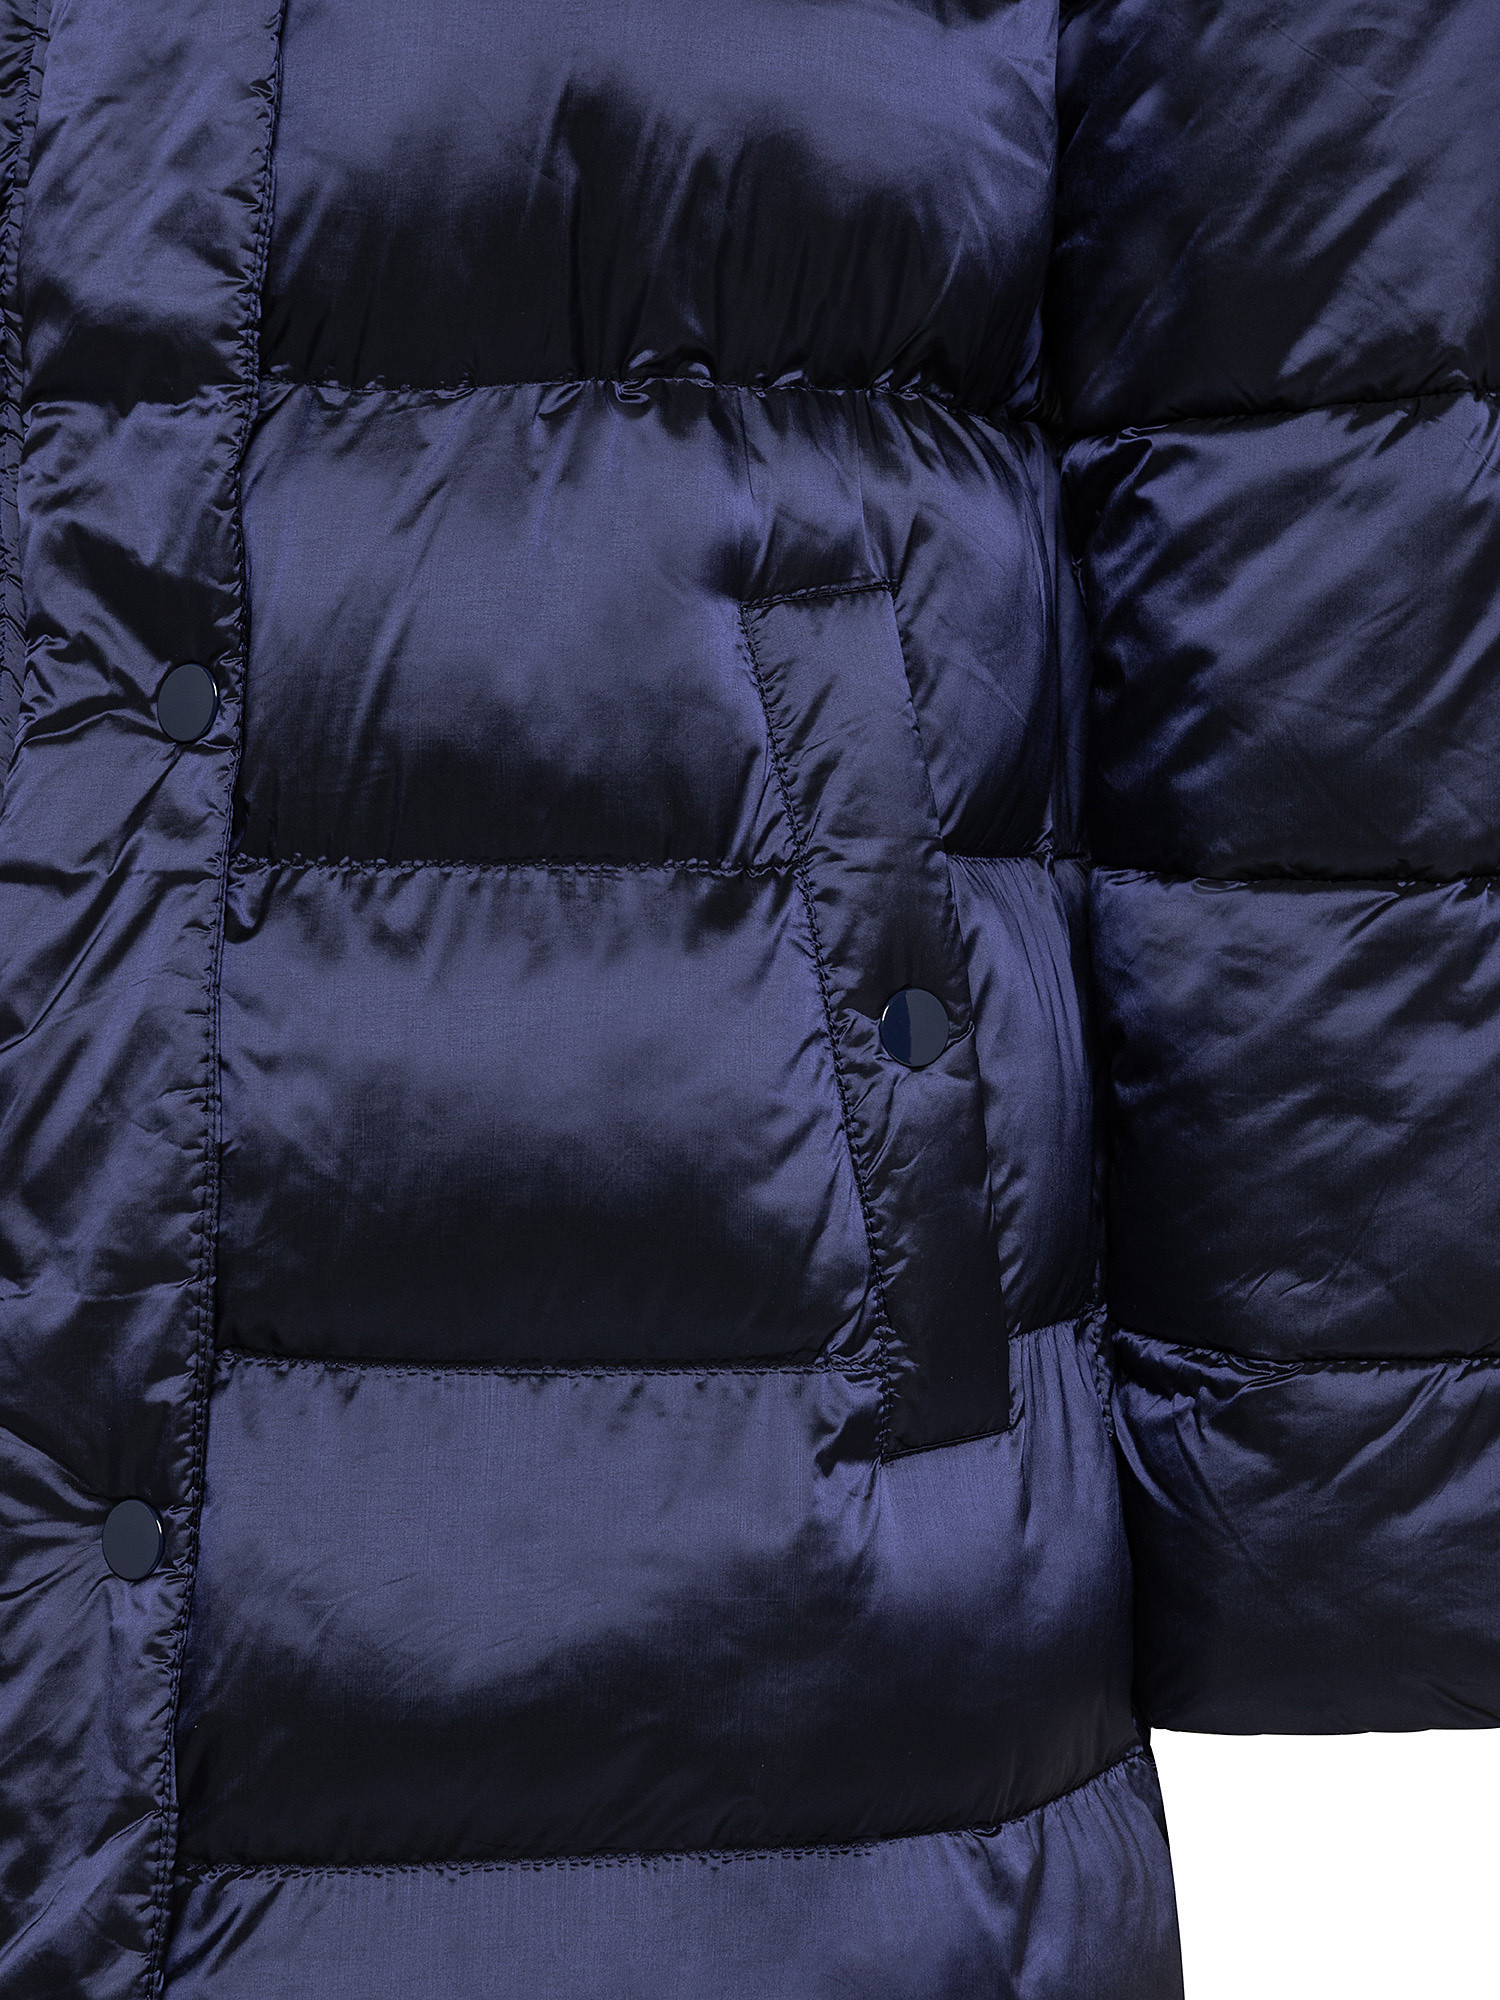 Giubbotto lungo con cappuccio, Blu scuro, large image number 2